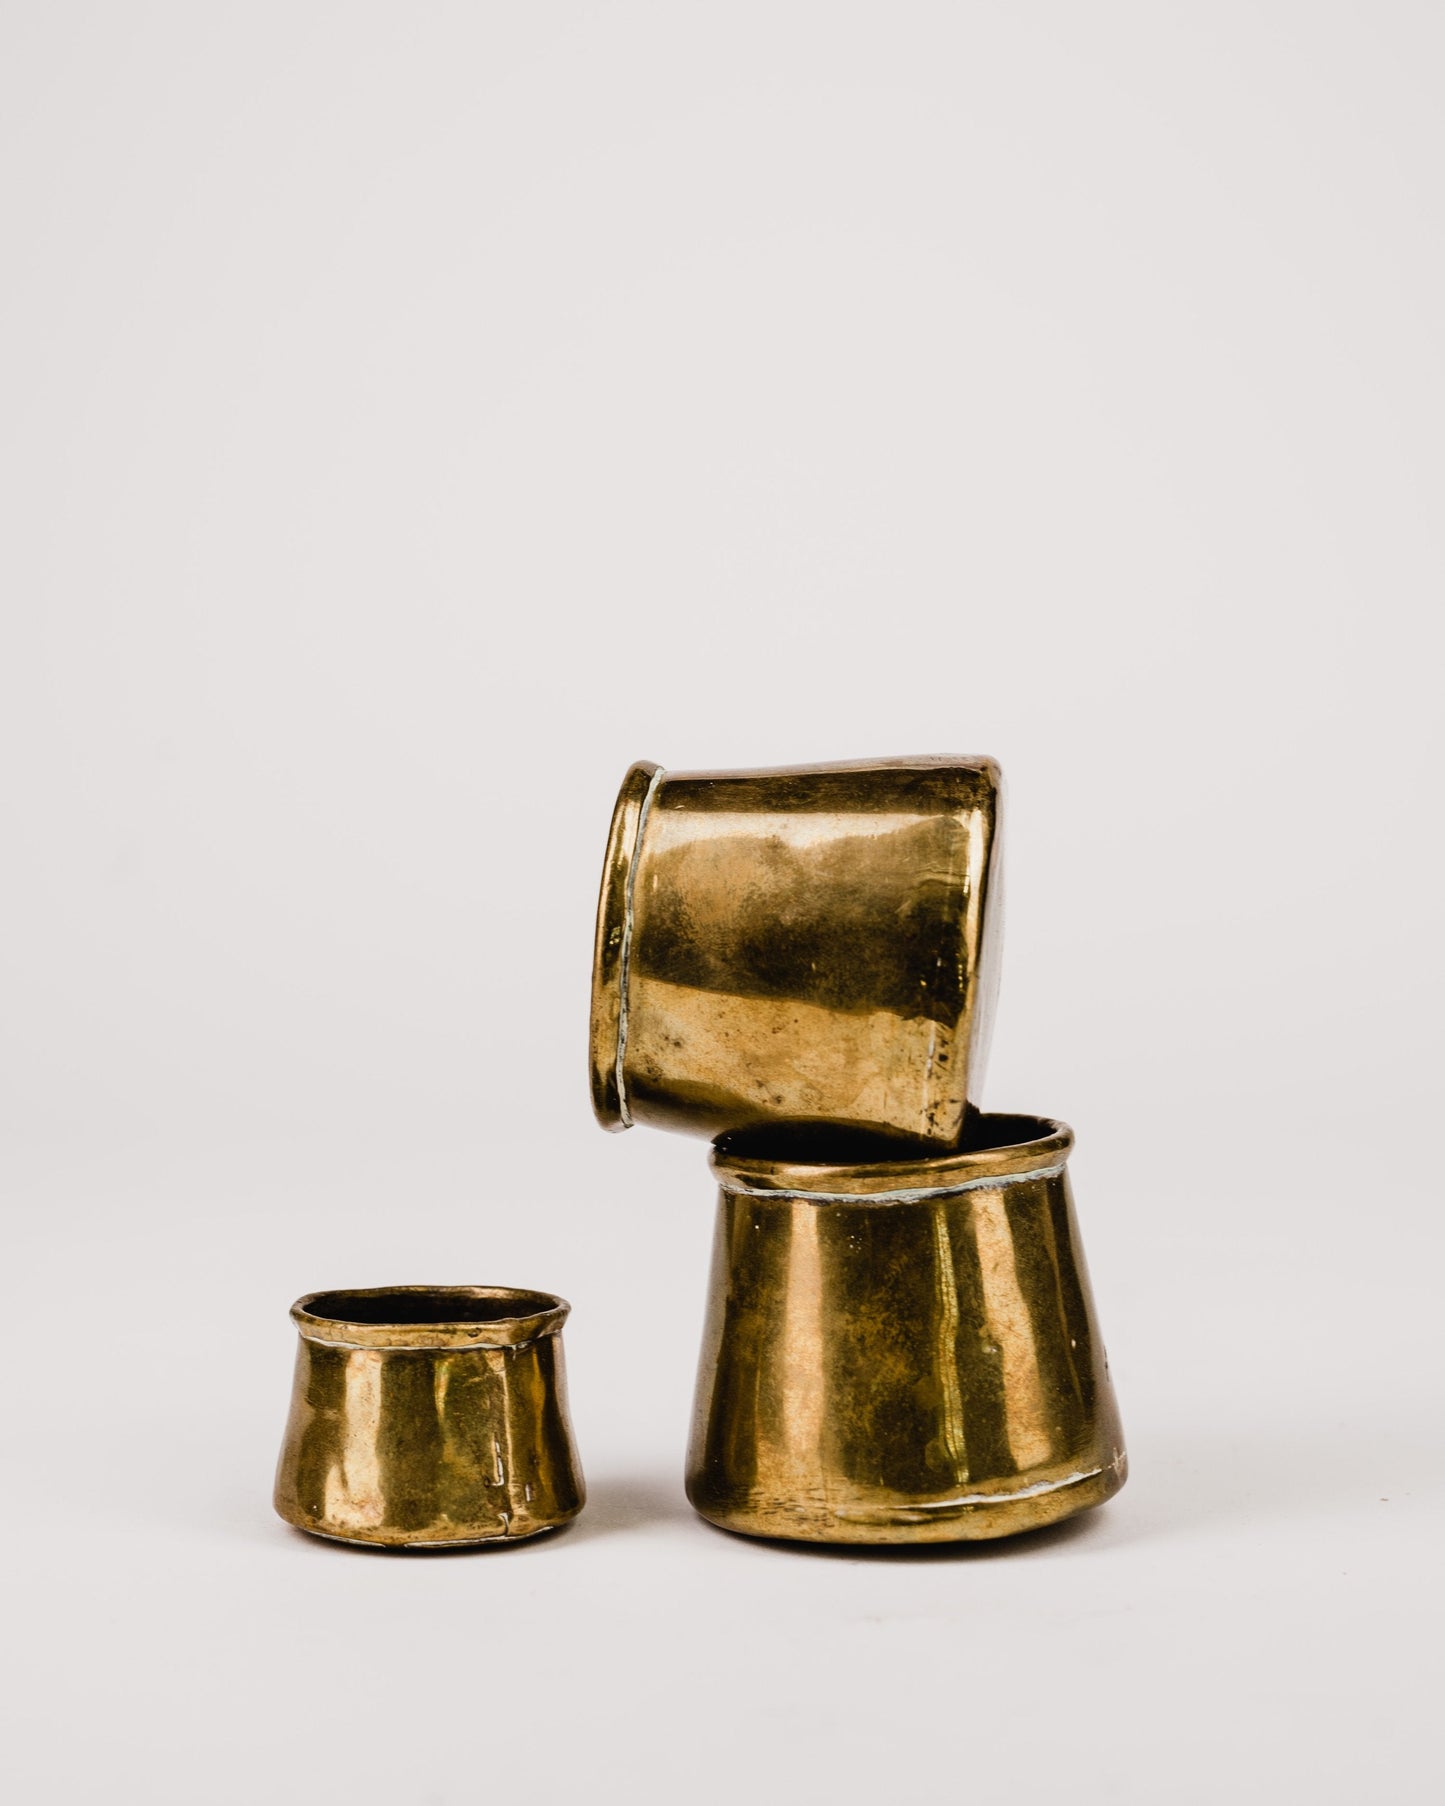 3 件套 1900 年代早期英国黄铜捏壶